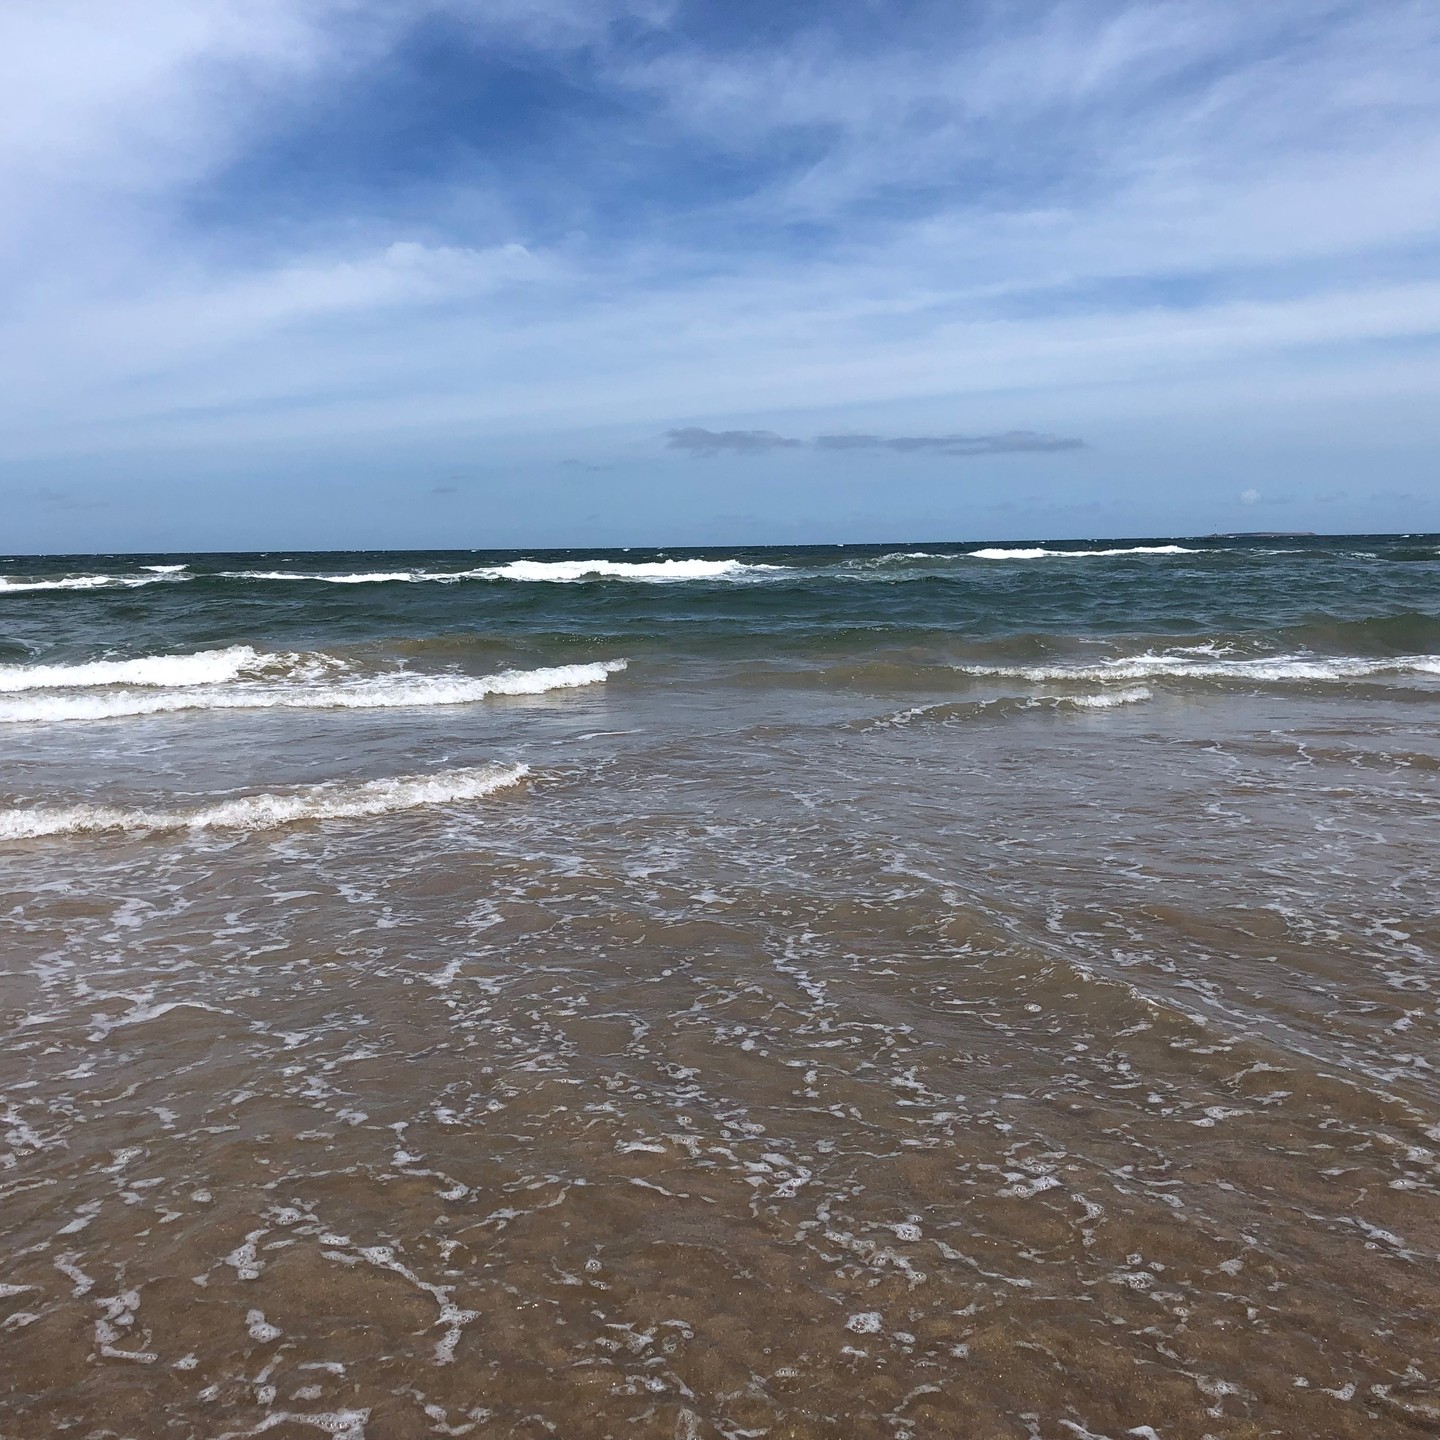 Hier einfach mal eine paar Bilder zum Thema Strand und Meer, viel Freude beim anschauen wünsche ich euch. #puntadeleste #uruguay #strand #meer #wasser #ozean #atlantik #atlantic #water #ocean #sunshine #sonnenschein #reisen #travel #unterwegs